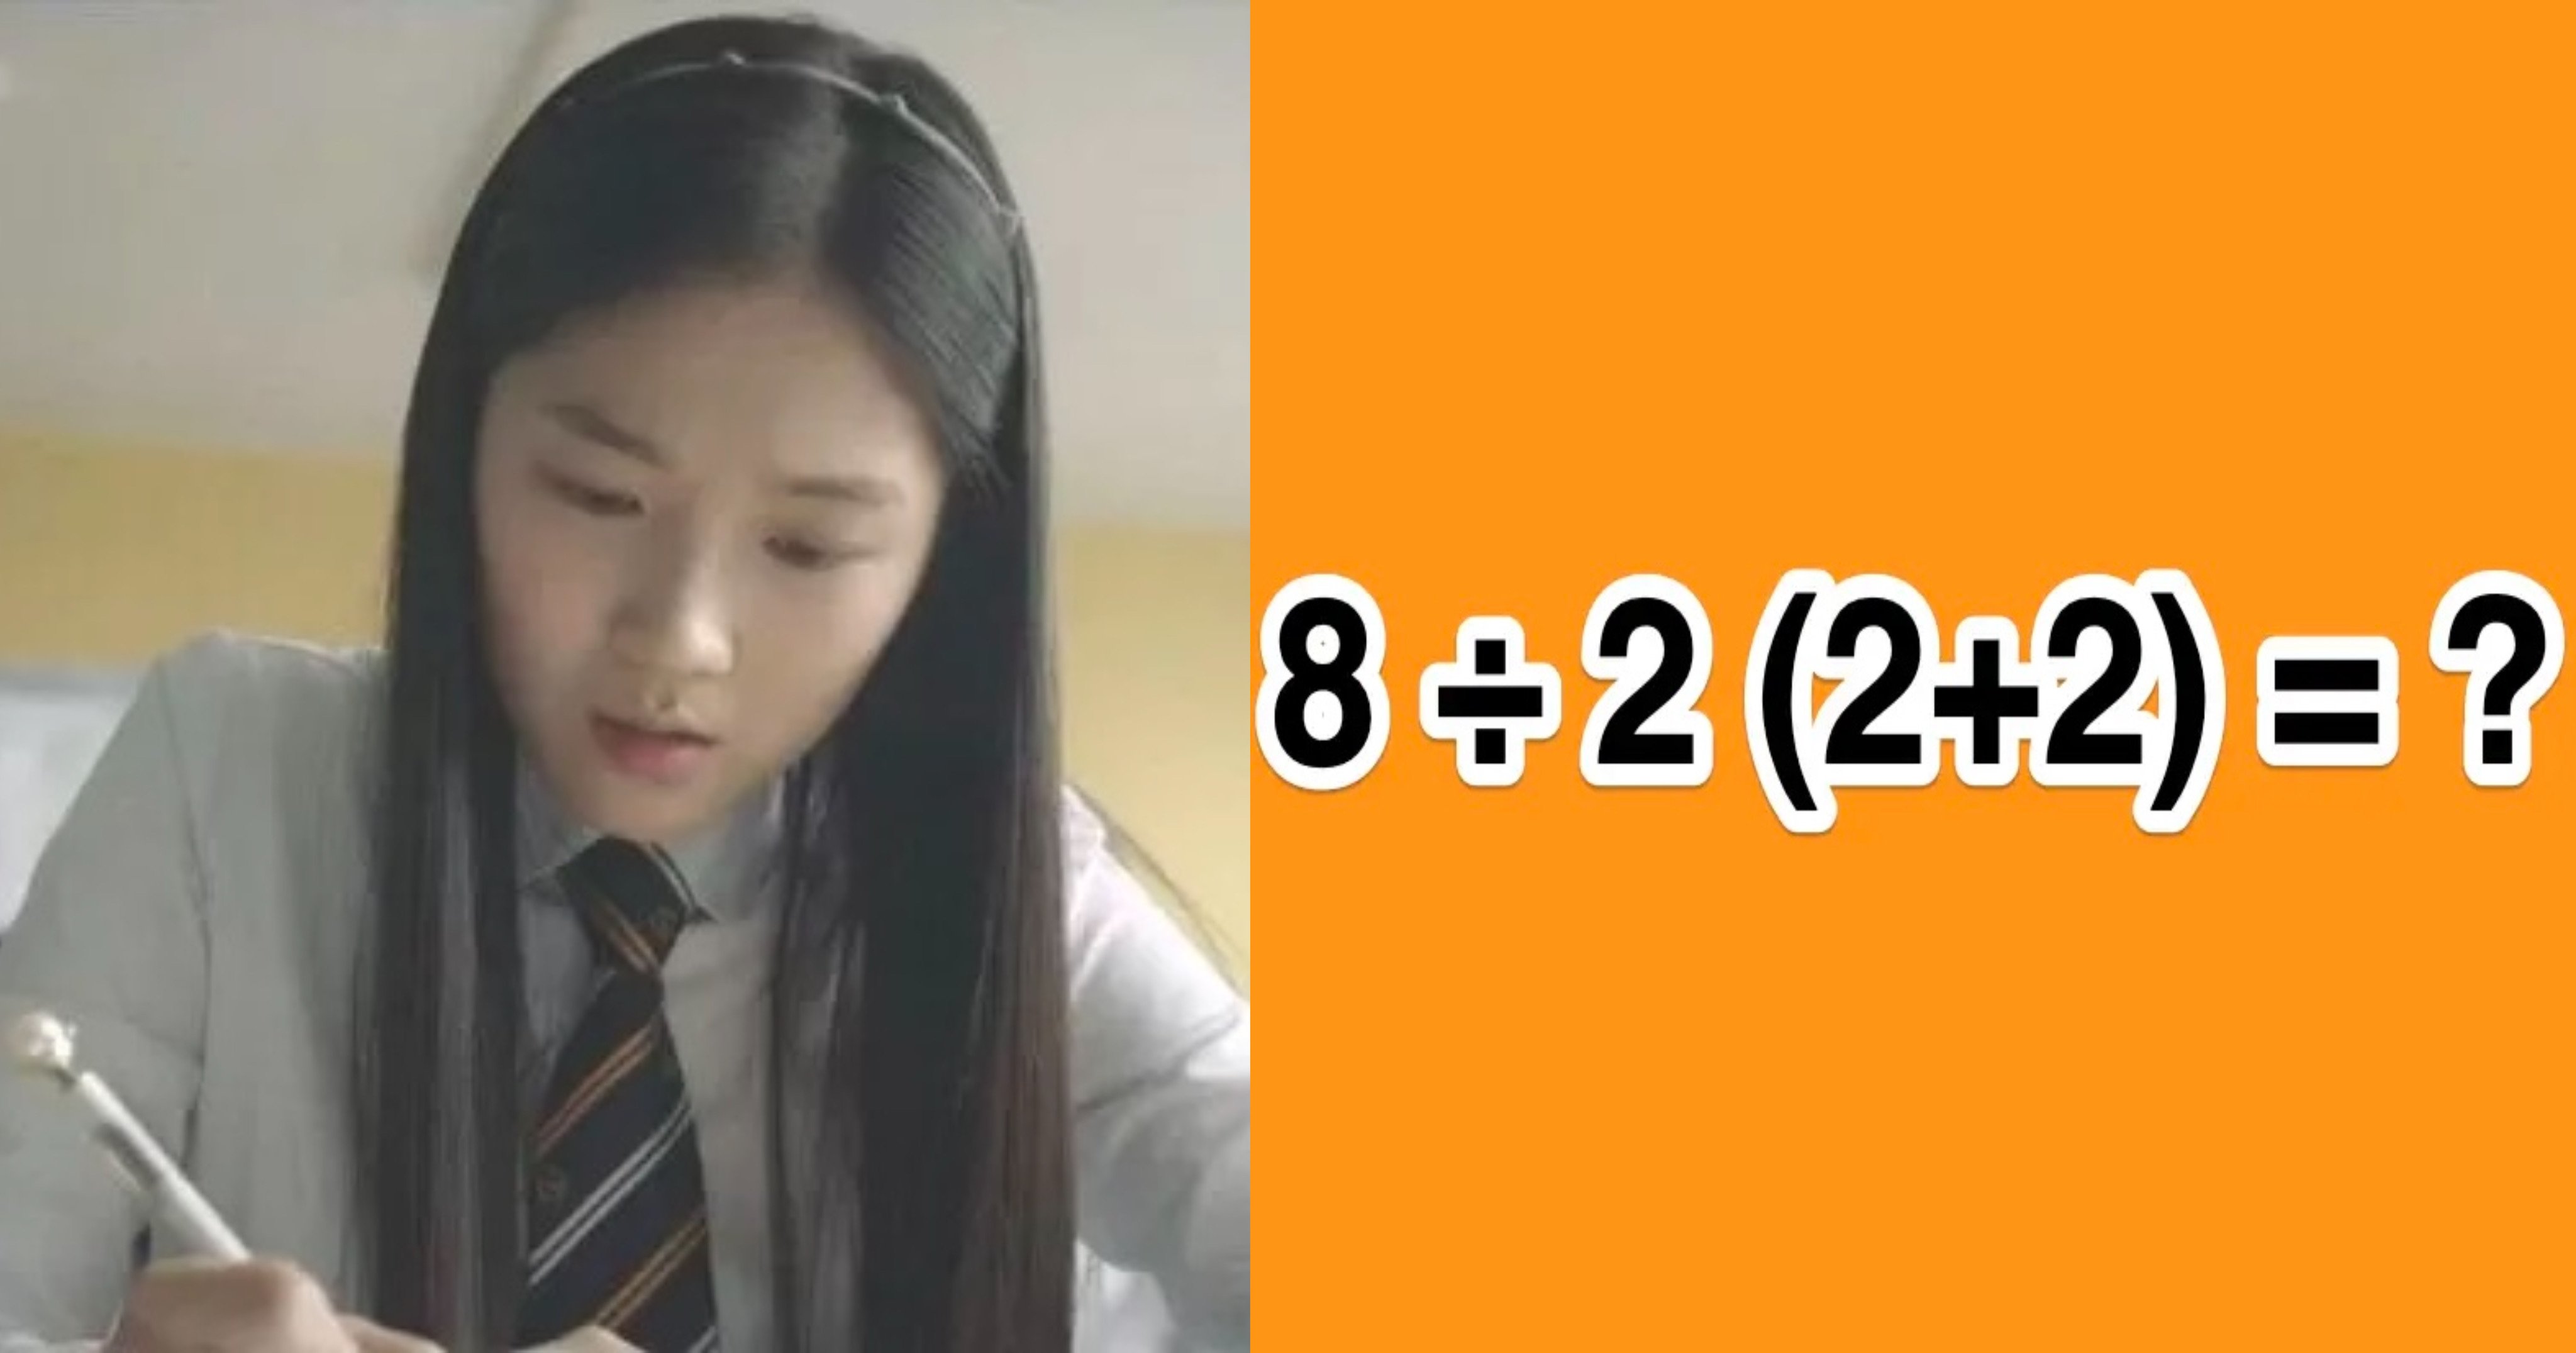 bdb6c556 8bff 414e b4e0 2312ea9c16e7.jpeg?resize=412,275 - "8÷2(2+2)=의 정답은?"..한국인들 절반이 틀린다고 난리 난 문제의 정답